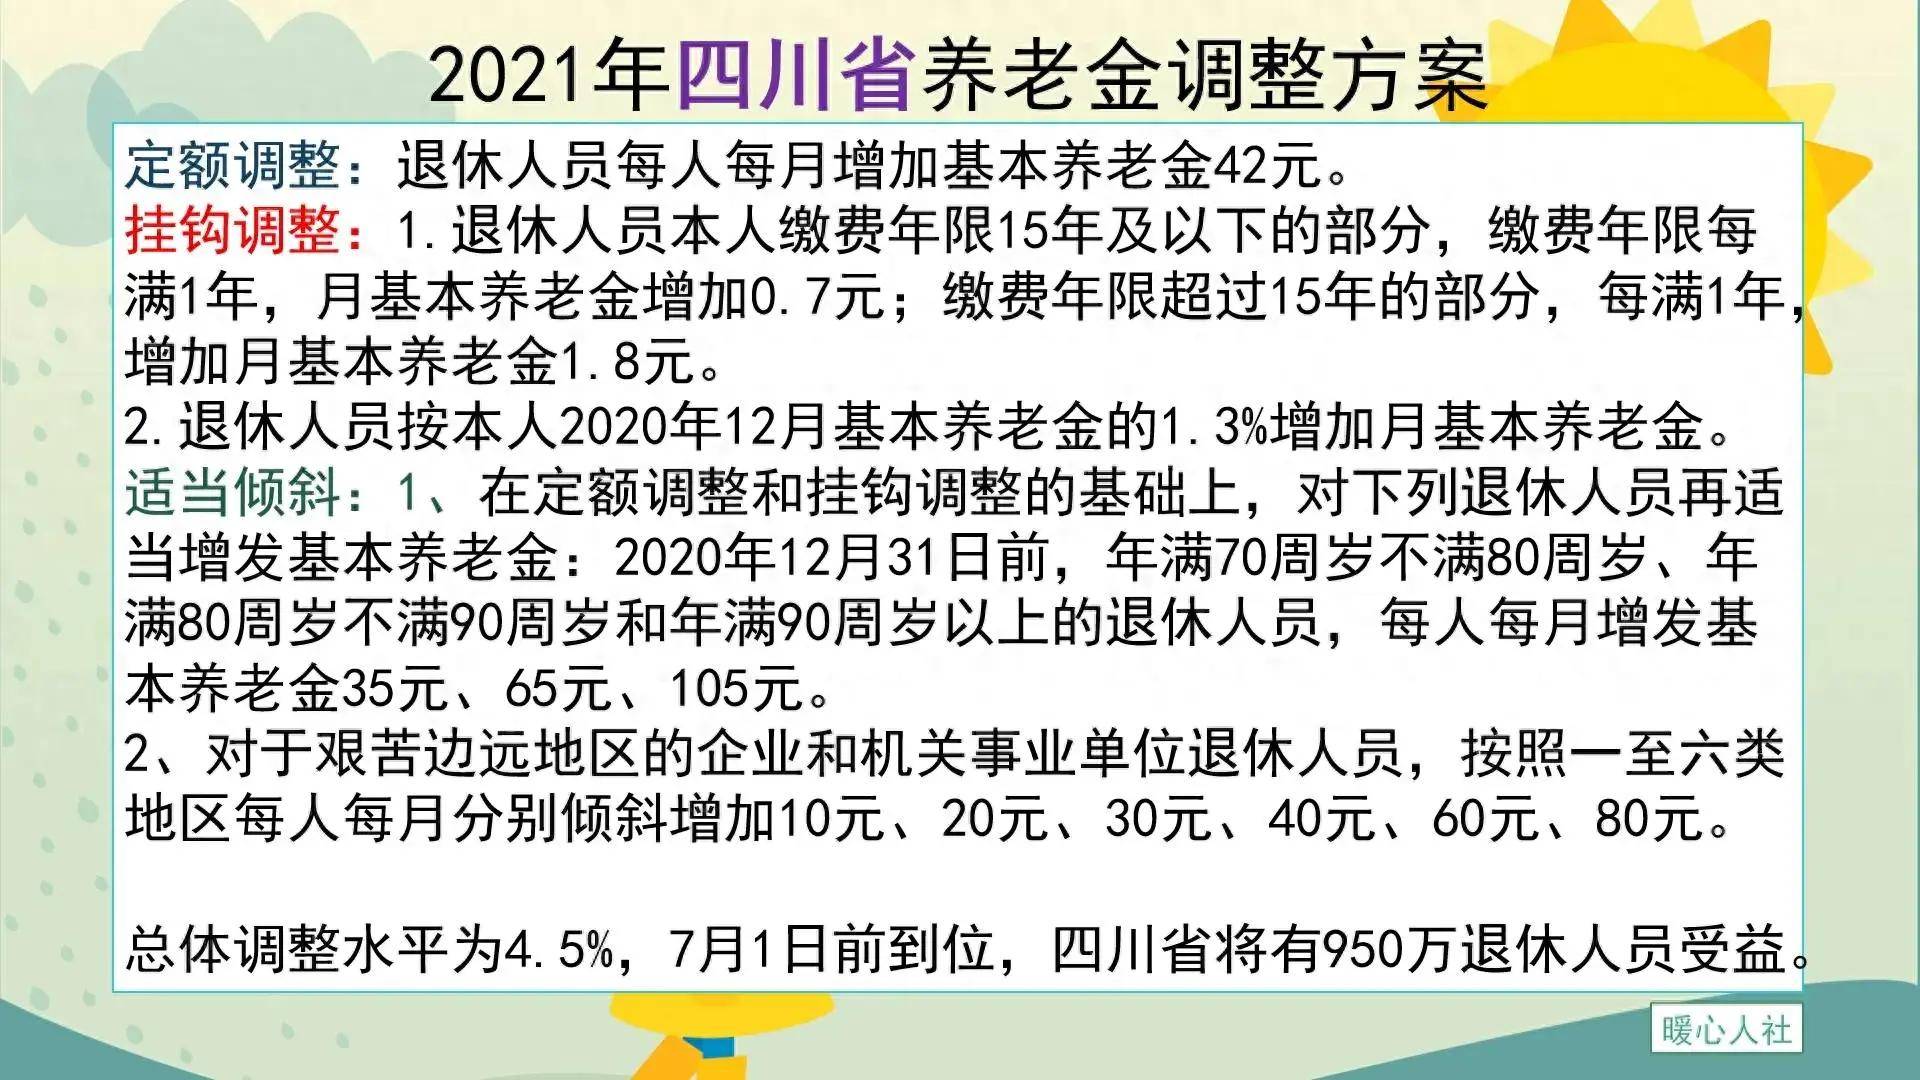 2022年的四川省养老金调整方案2022年全国养老金总体调整水平由4